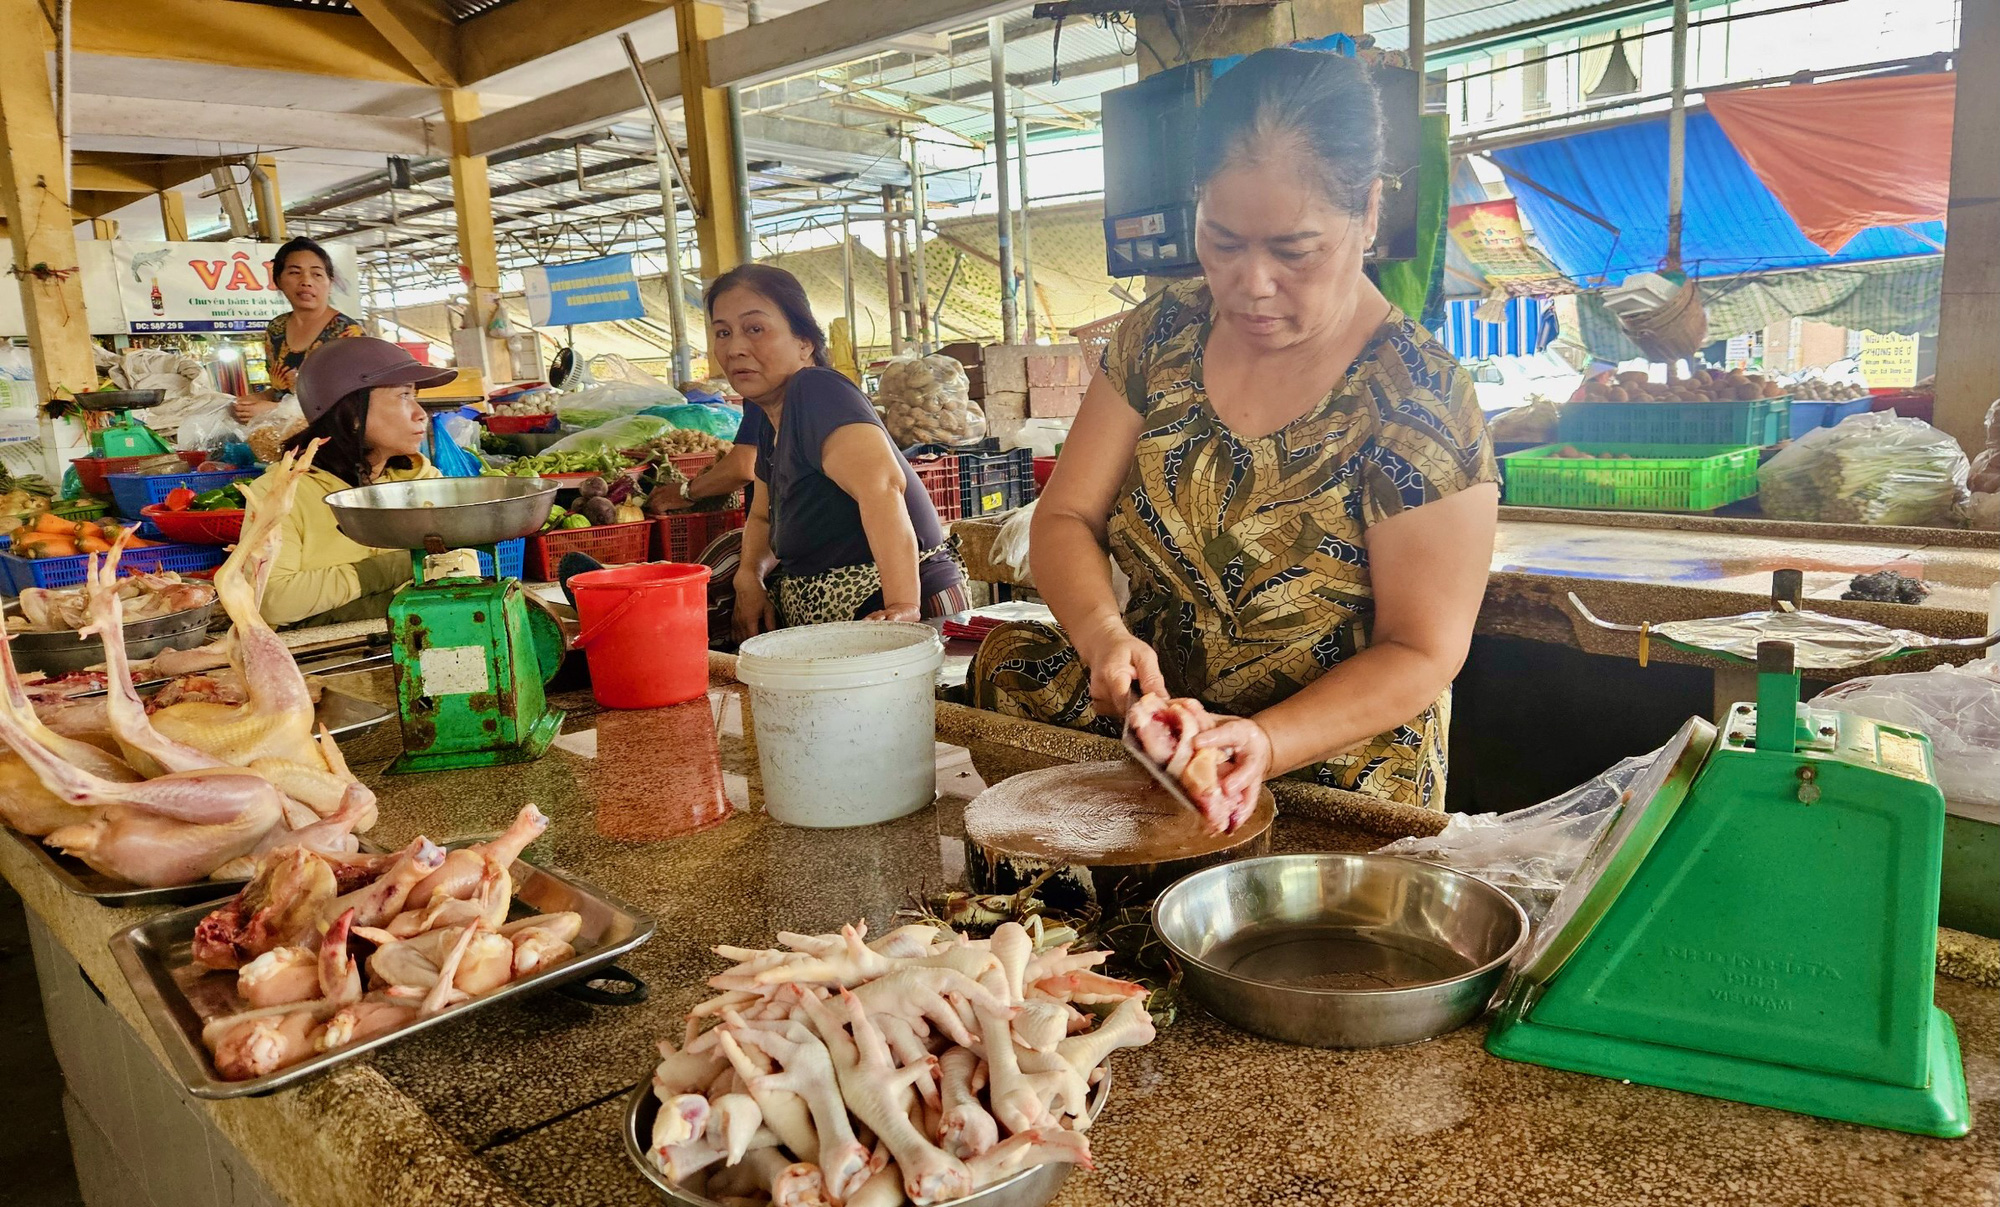 Quầy bán thịt gà ở chợ Xóm Mới Nha Trang đìu hiu, vắng khách - Ảnh: MINH CHIẾN